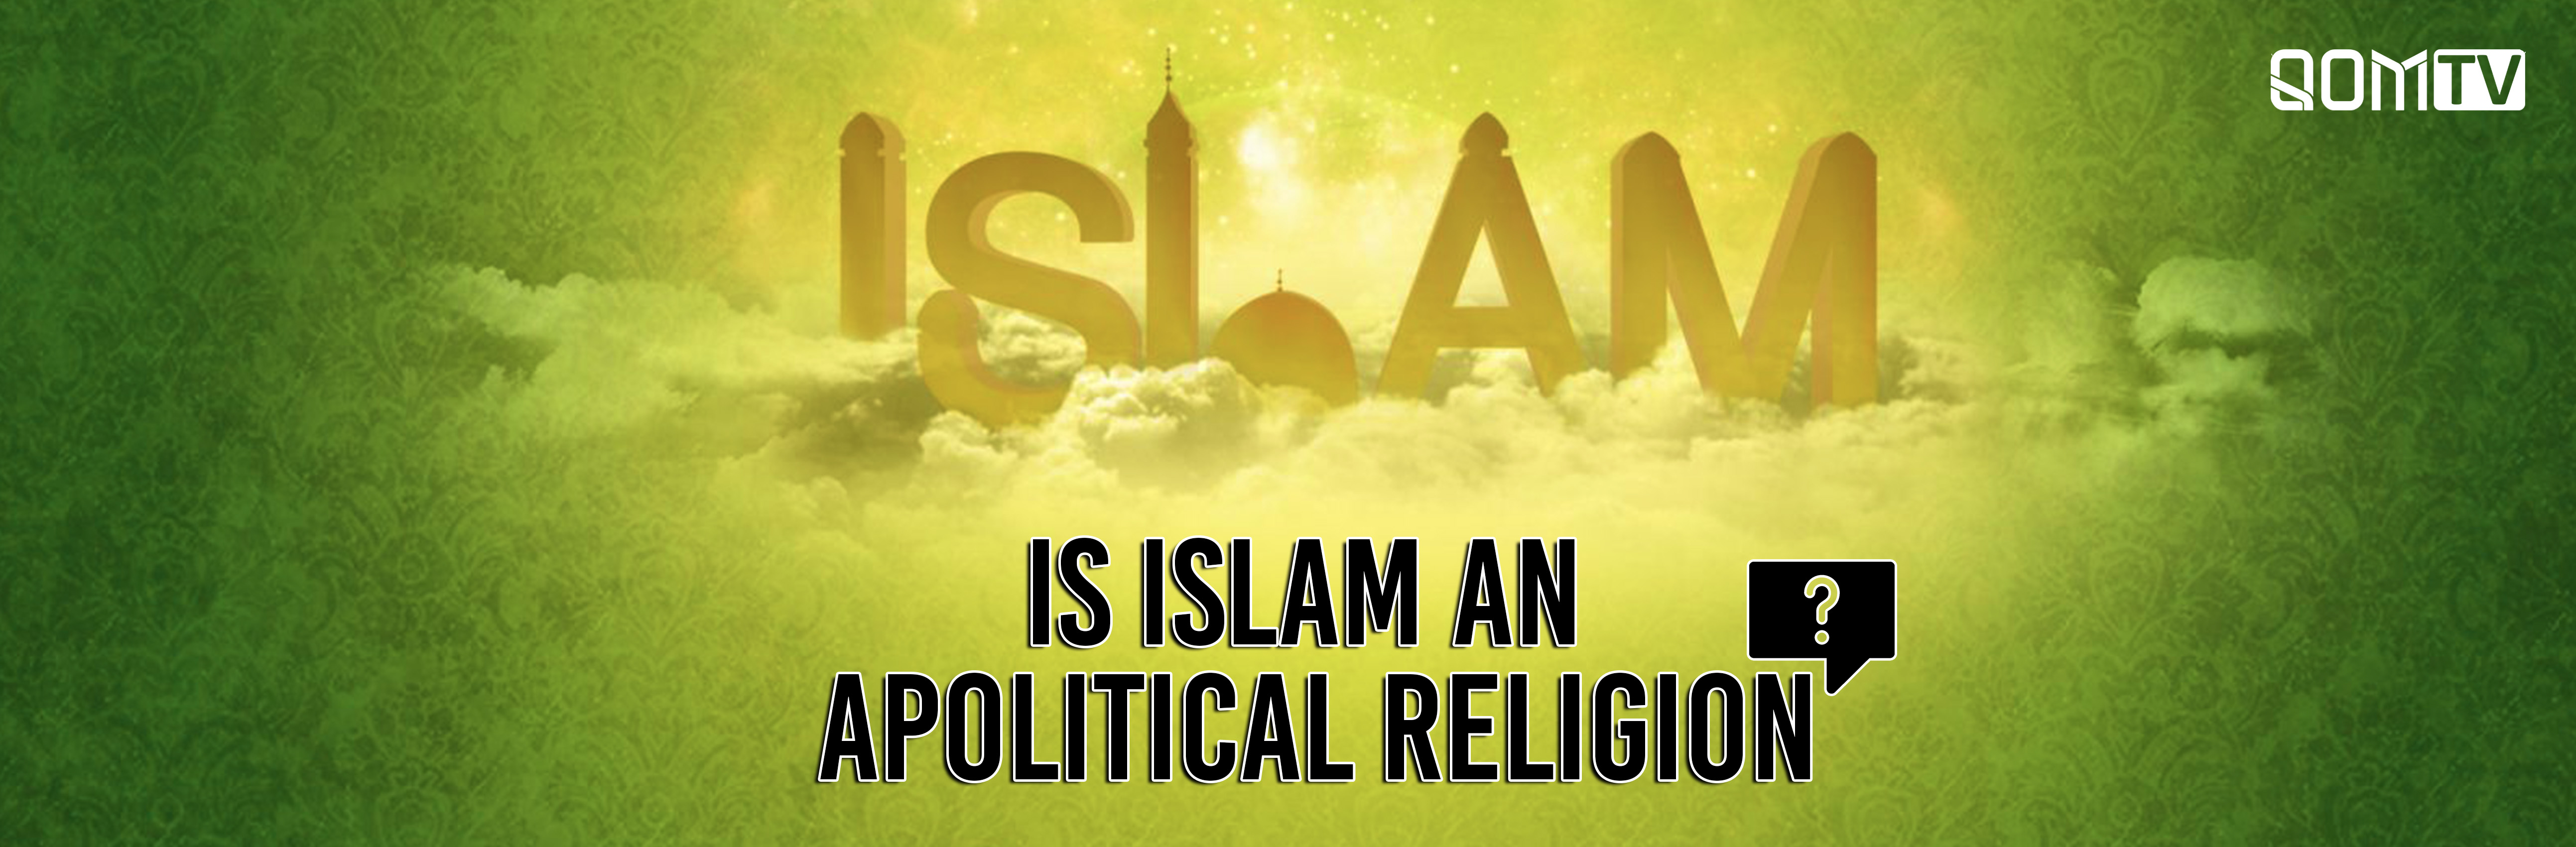 Are Politics and Religion Separable? - QomTV